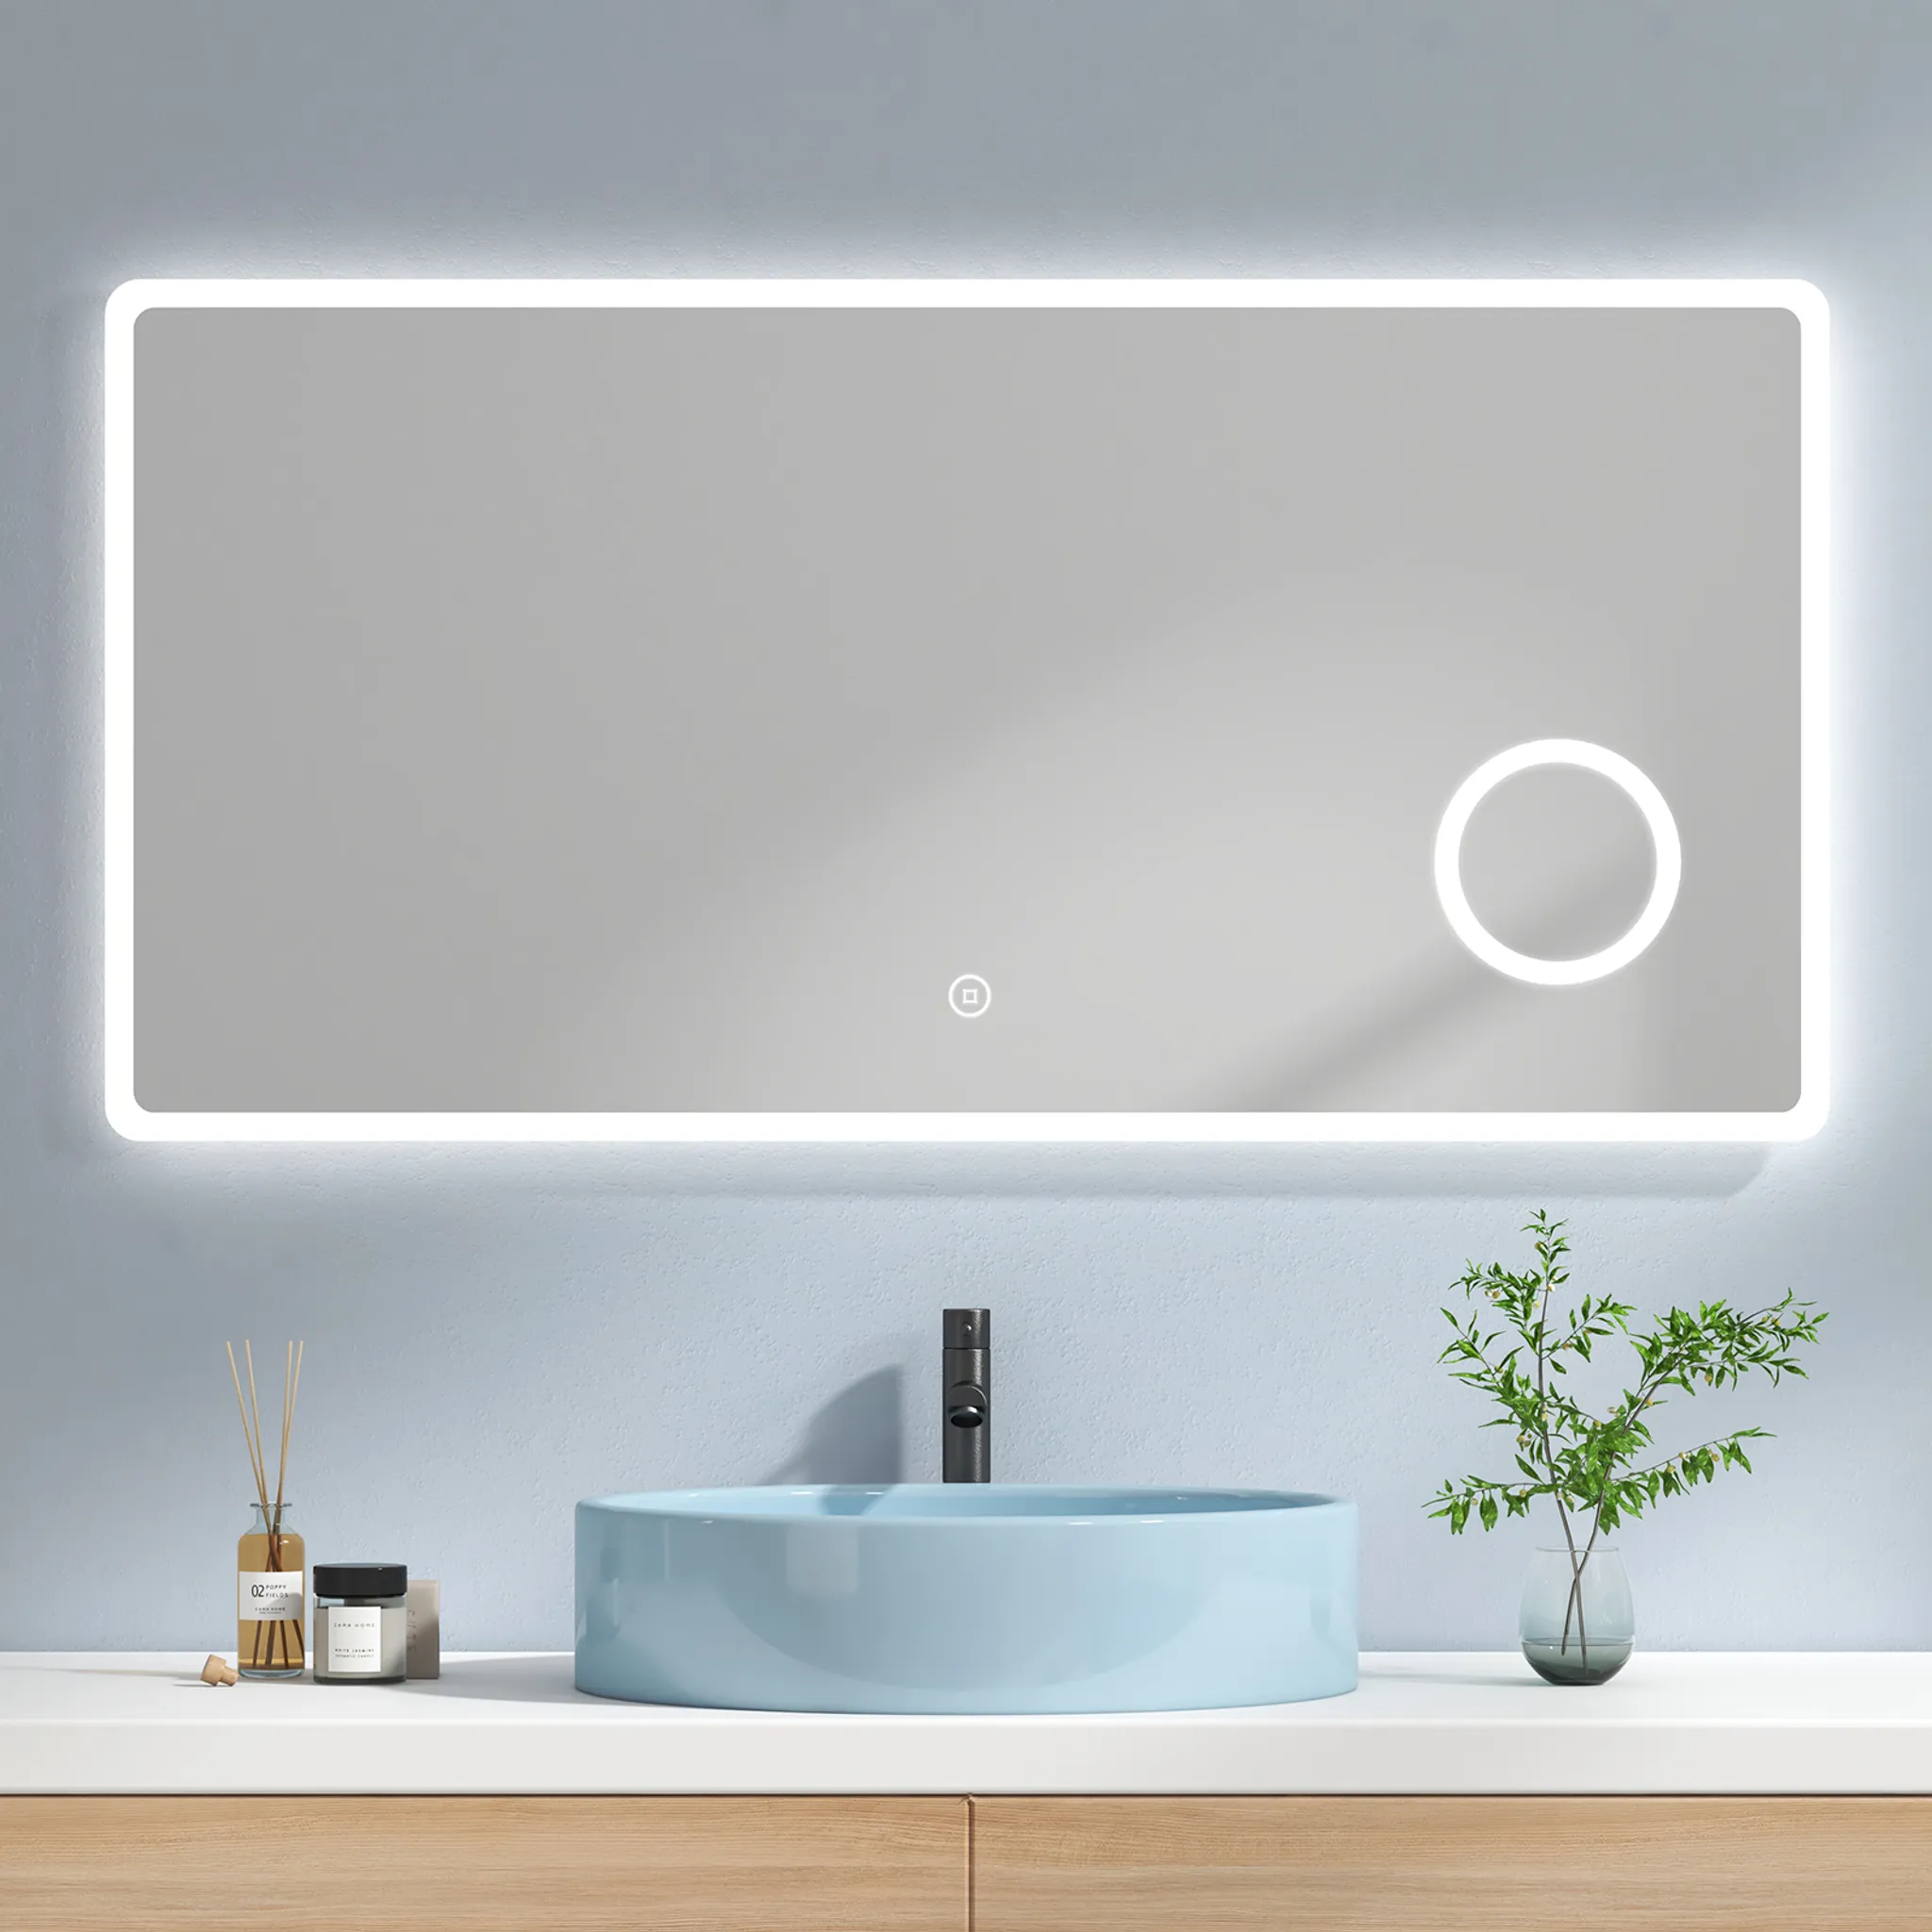 SONNI Badspiegel Lichtspiegel LED Spiegel Wandspiegel mit Sensor-Schalter  100 x 60cm kaltweiß IP44 energiesparend